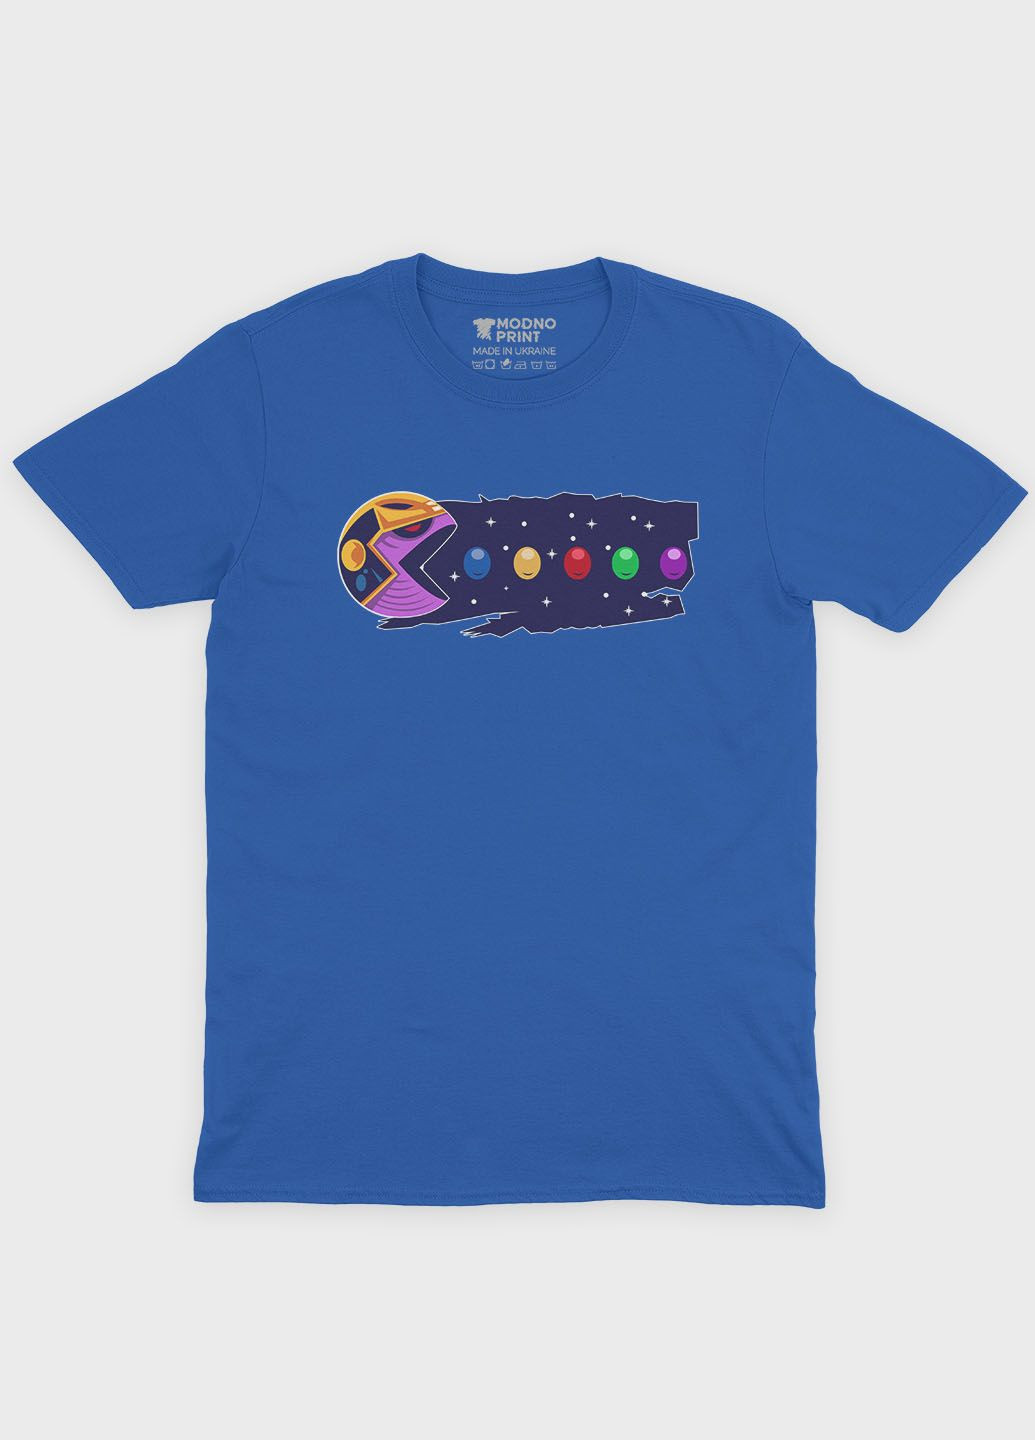 Синя демісезонна футболка для хлопчика з принтом супезлодія - танос (ts001-1-brr-006-019-015-b) Modno